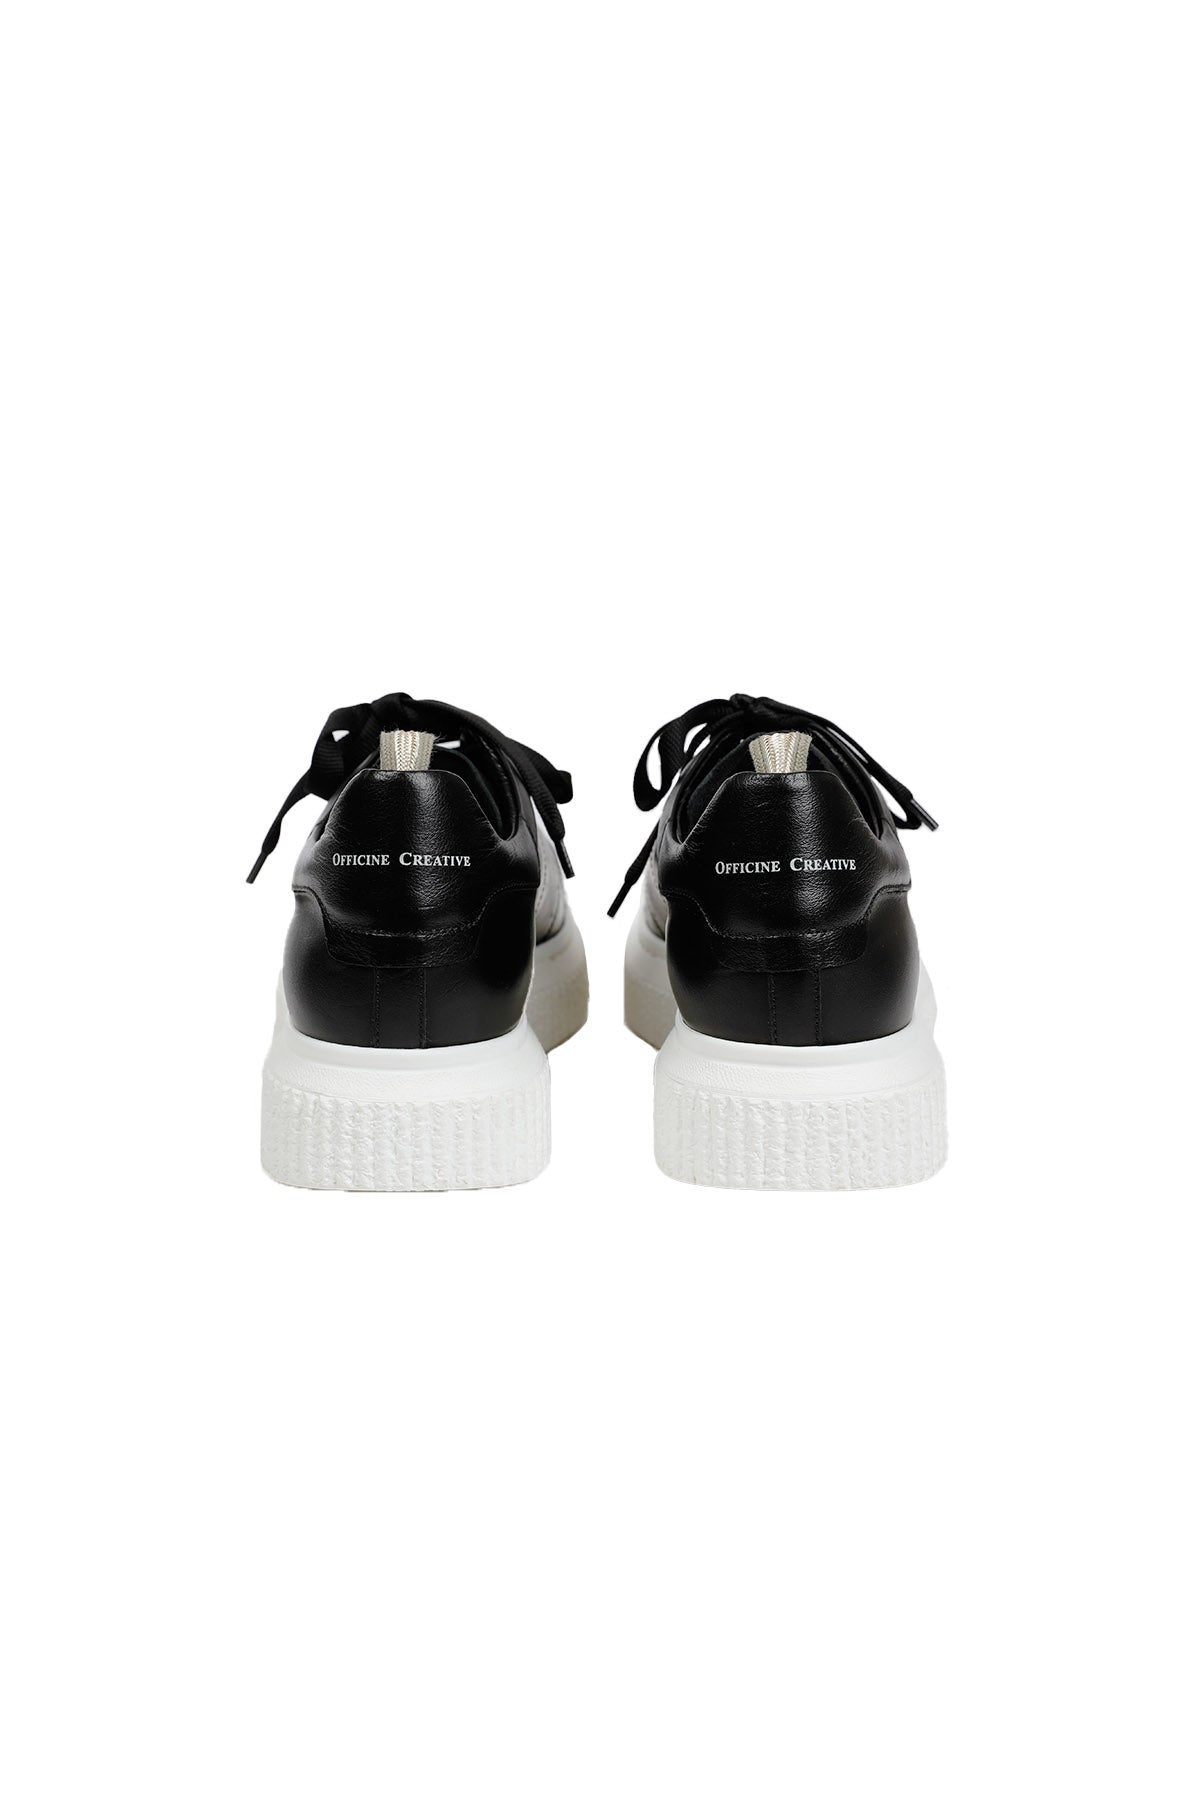 Officine Creative Krace Sneaker Ayakkabı-Libas Trendy Fashion Store